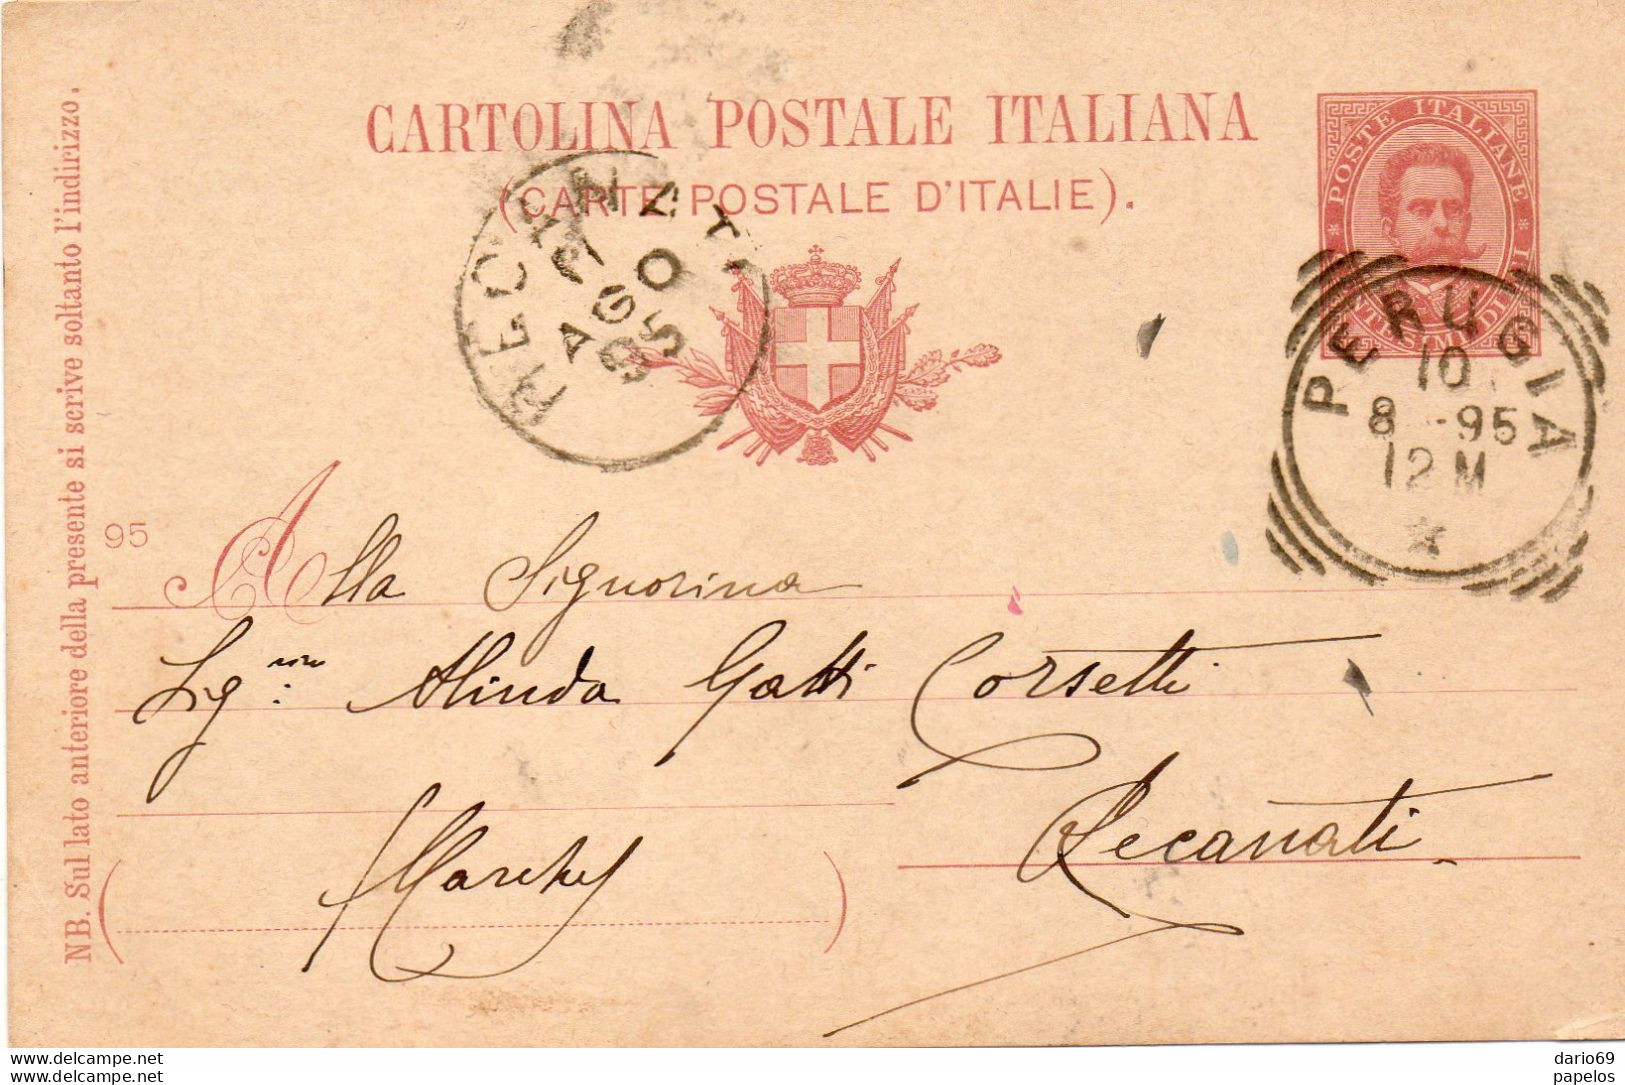 1895 CARTOLINA CON ANNULLO RECANATI + PERUGIA - Stamped Stationery